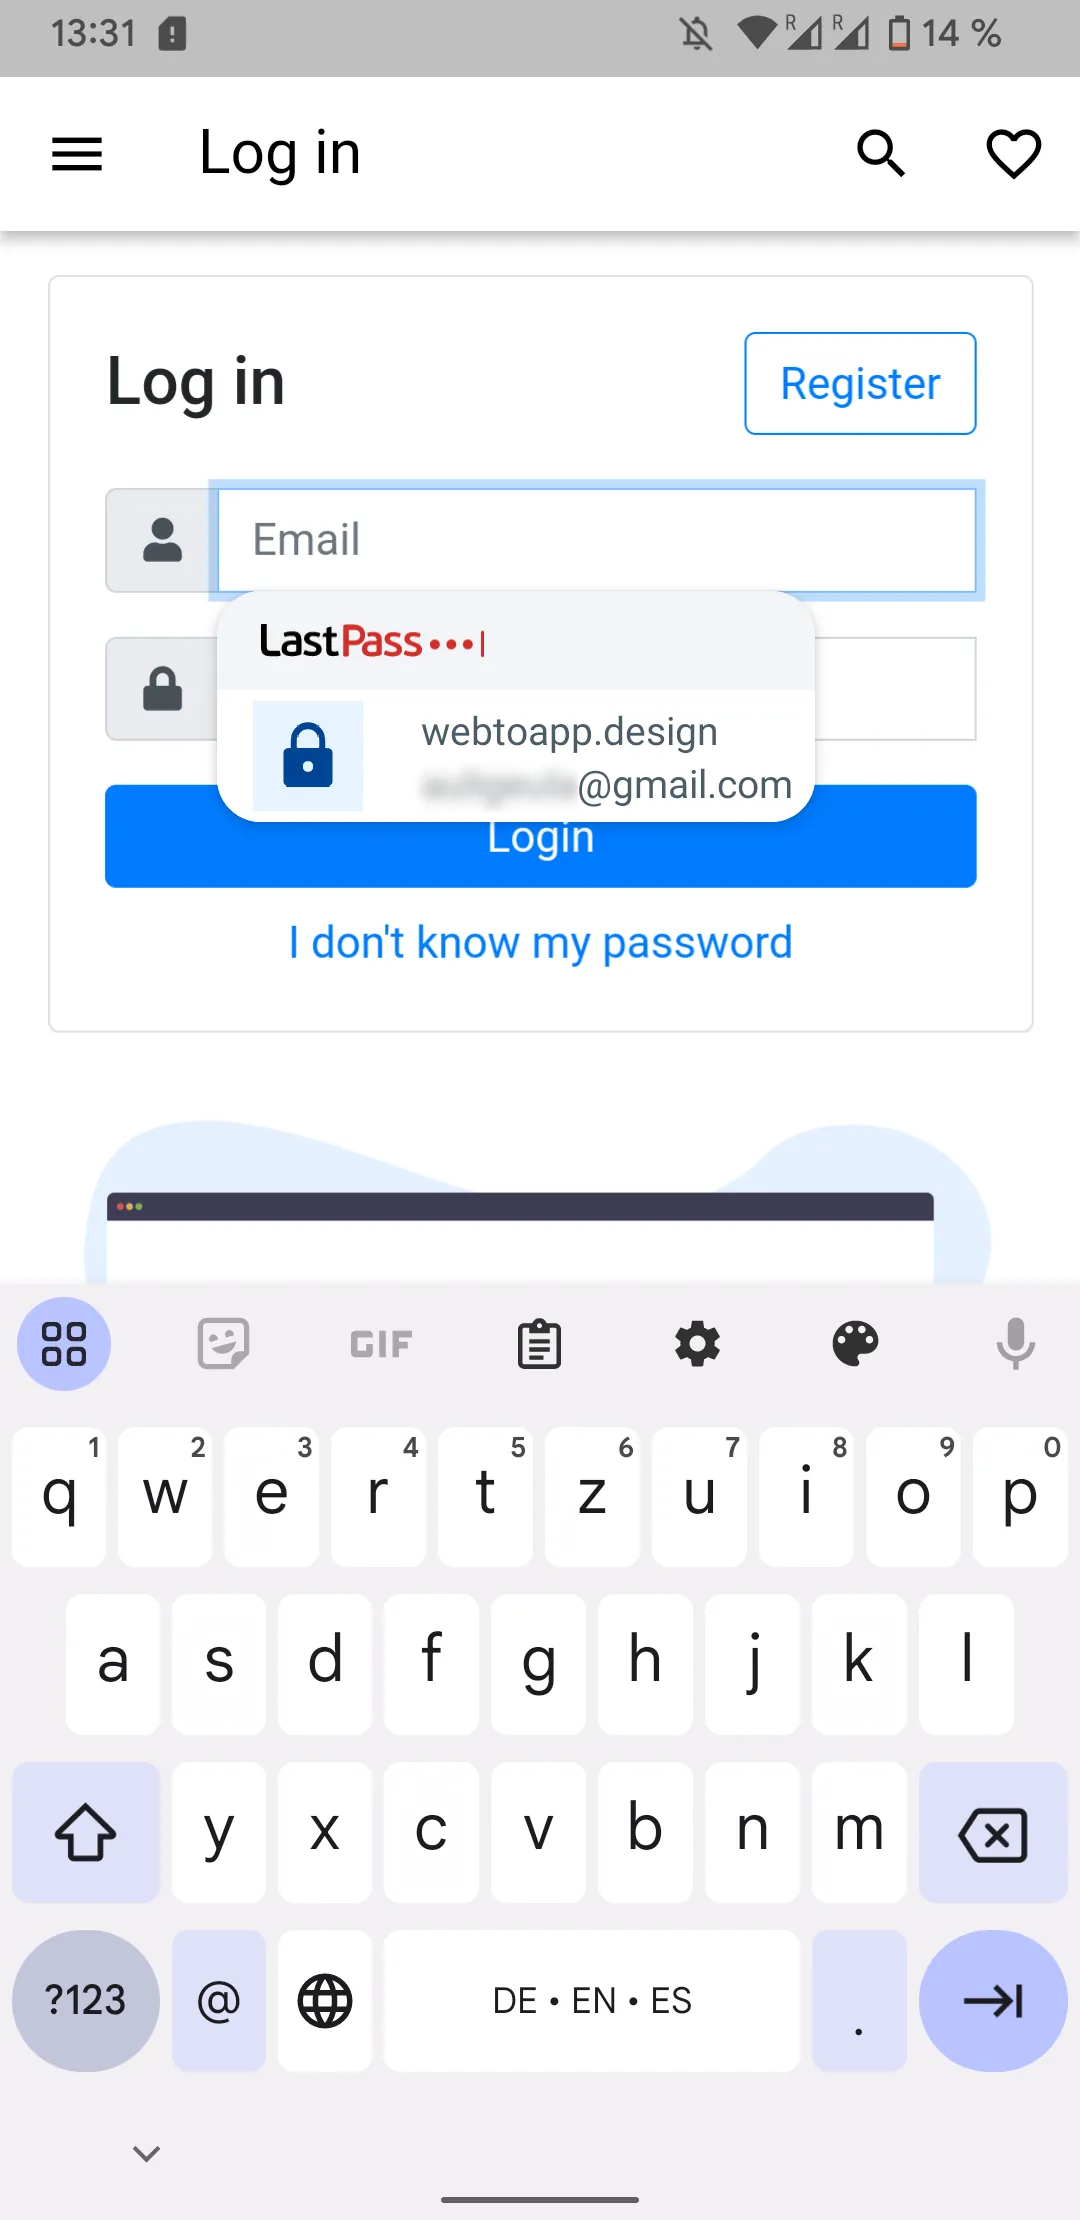 Een screenshot van een LastPass-popup die aanbiedt om automatisch de inloggegevens in te vullen die zijn opgeslagen voor de webtoapp.design-app.